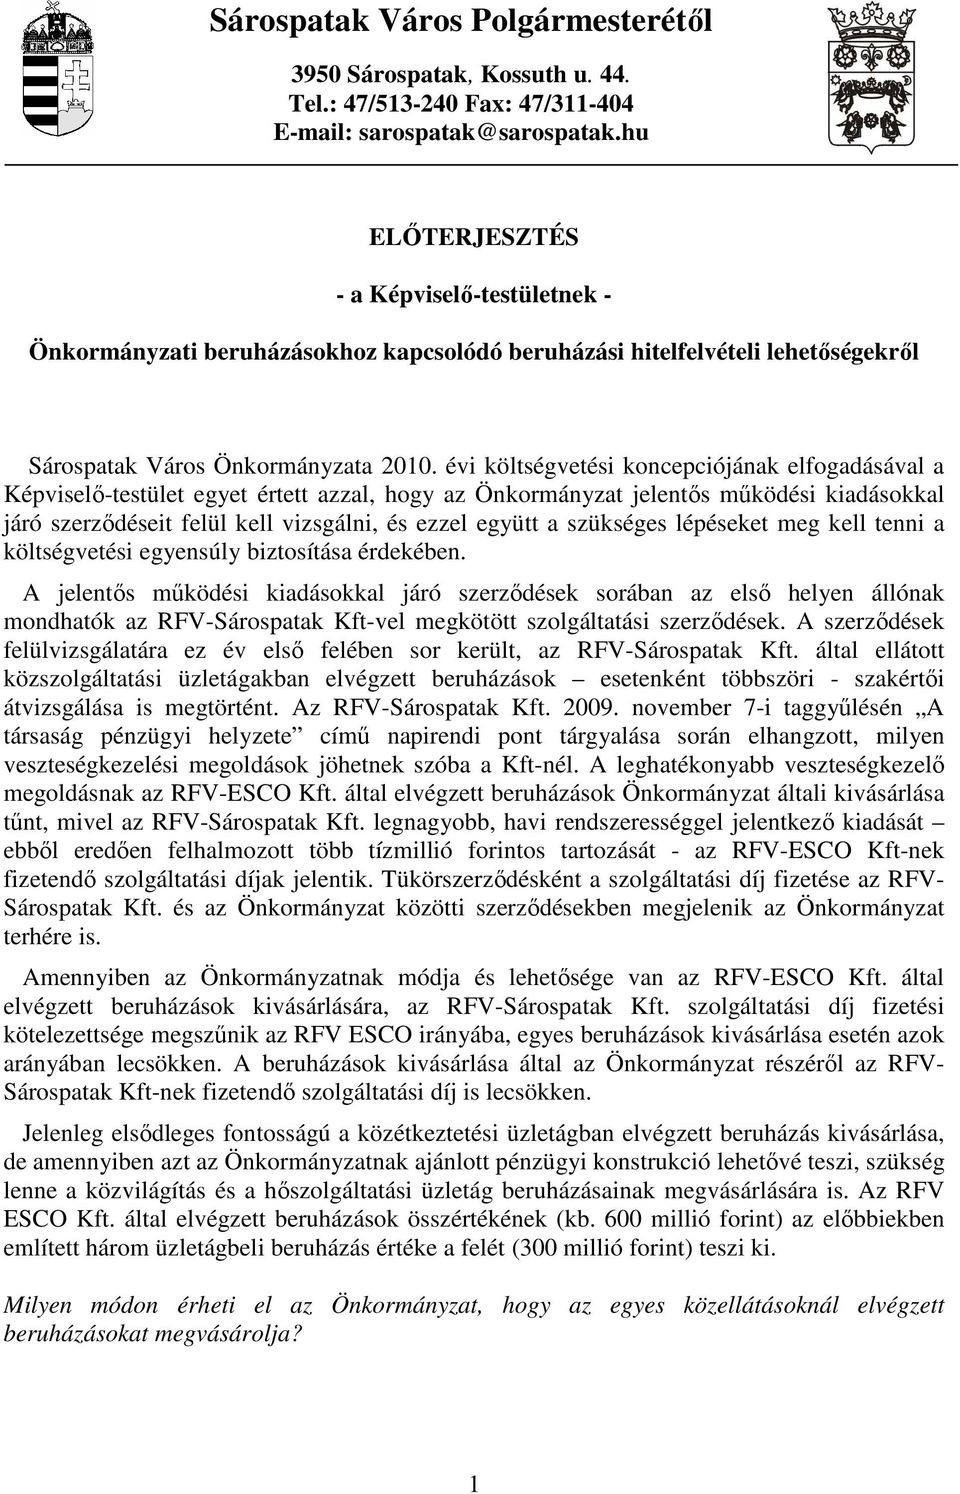 évi költségvetési koncepciójának elfogadásával a Képviselı-testület egyet értett azzal, hogy az Önkormányzat jelentıs mőködési kiadásokkal járó szerzıdéseit felül kell vizsgálni, és ezzel együtt a